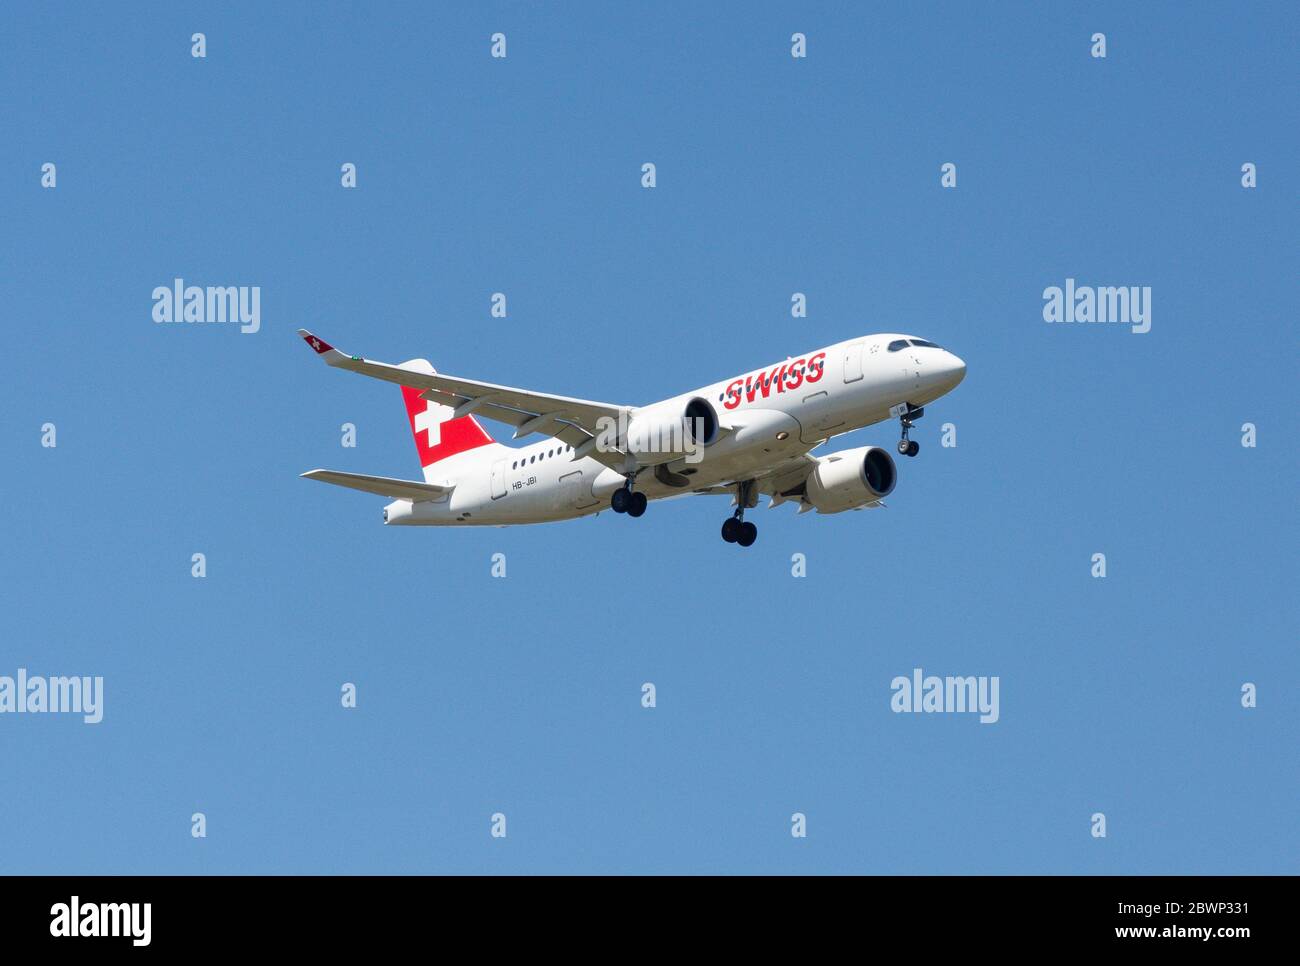 Airbus A220-100 suisses atterrissant à l'aéroport de Londres Heathrow, London Borough of Hillingdon, Greater London, Angleterre, Royaume-Uni Banque D'Images